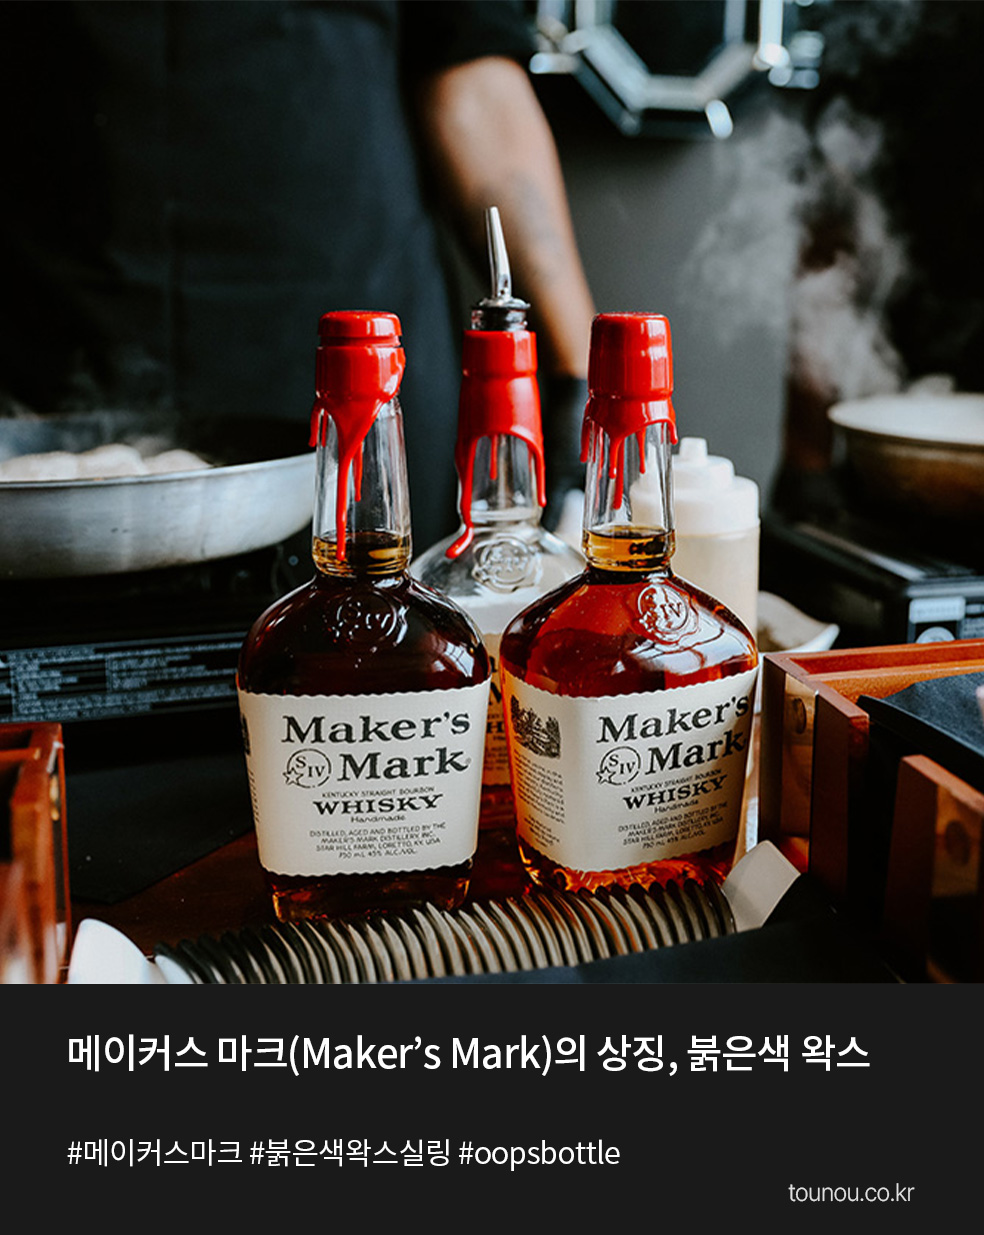 예술이 있는 하루 메이커스 마크(Maker’s Mark)의 상징, 붉은색 왁스